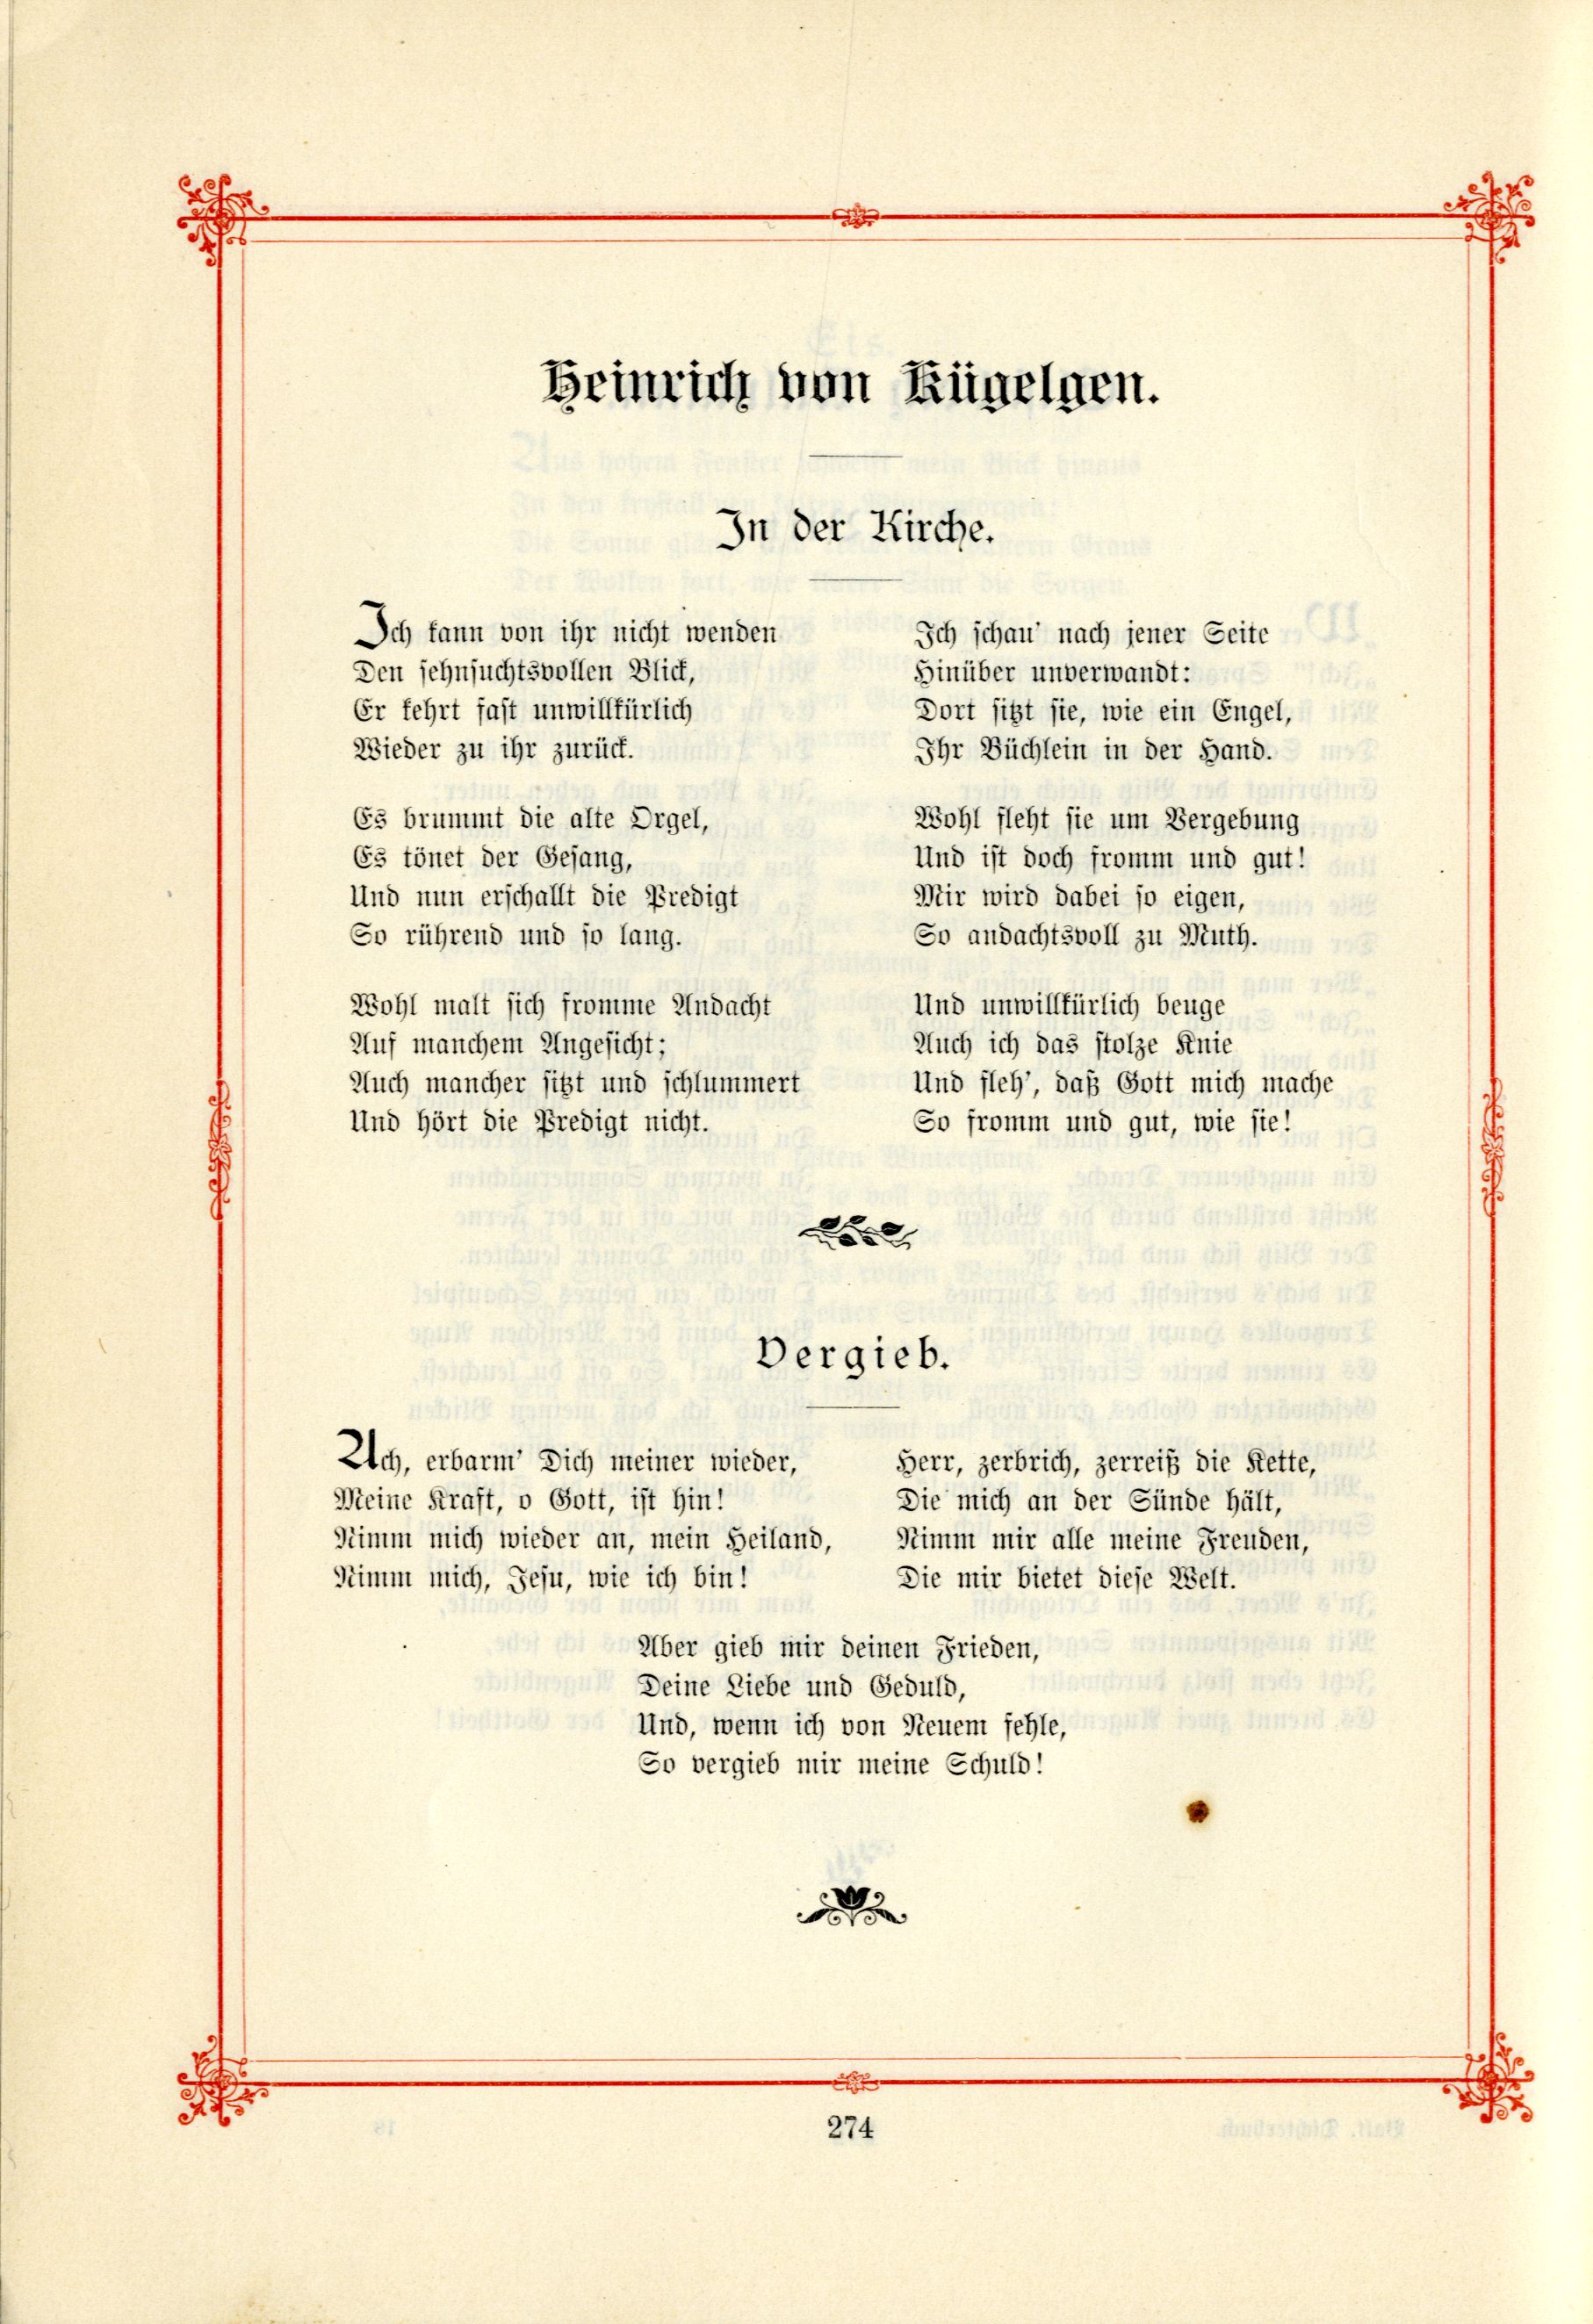 Vergieb (1895) | 1. (274) Основной текст